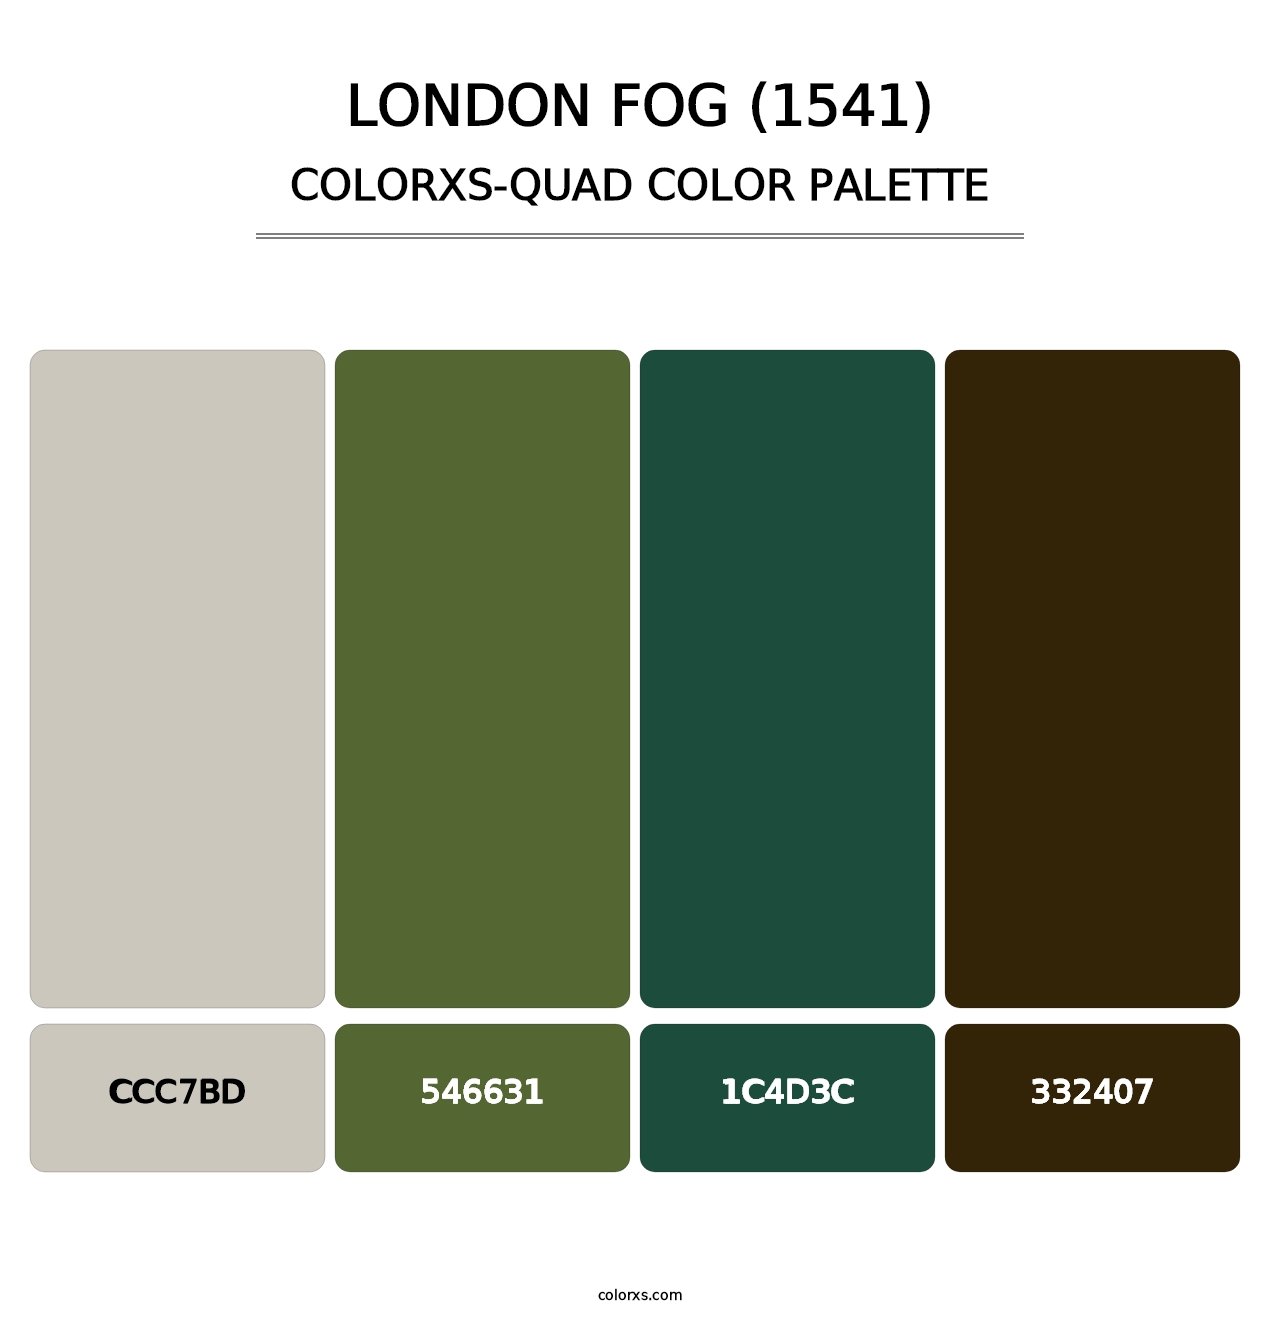 London Fog (1541) - Colorxs Quad Palette